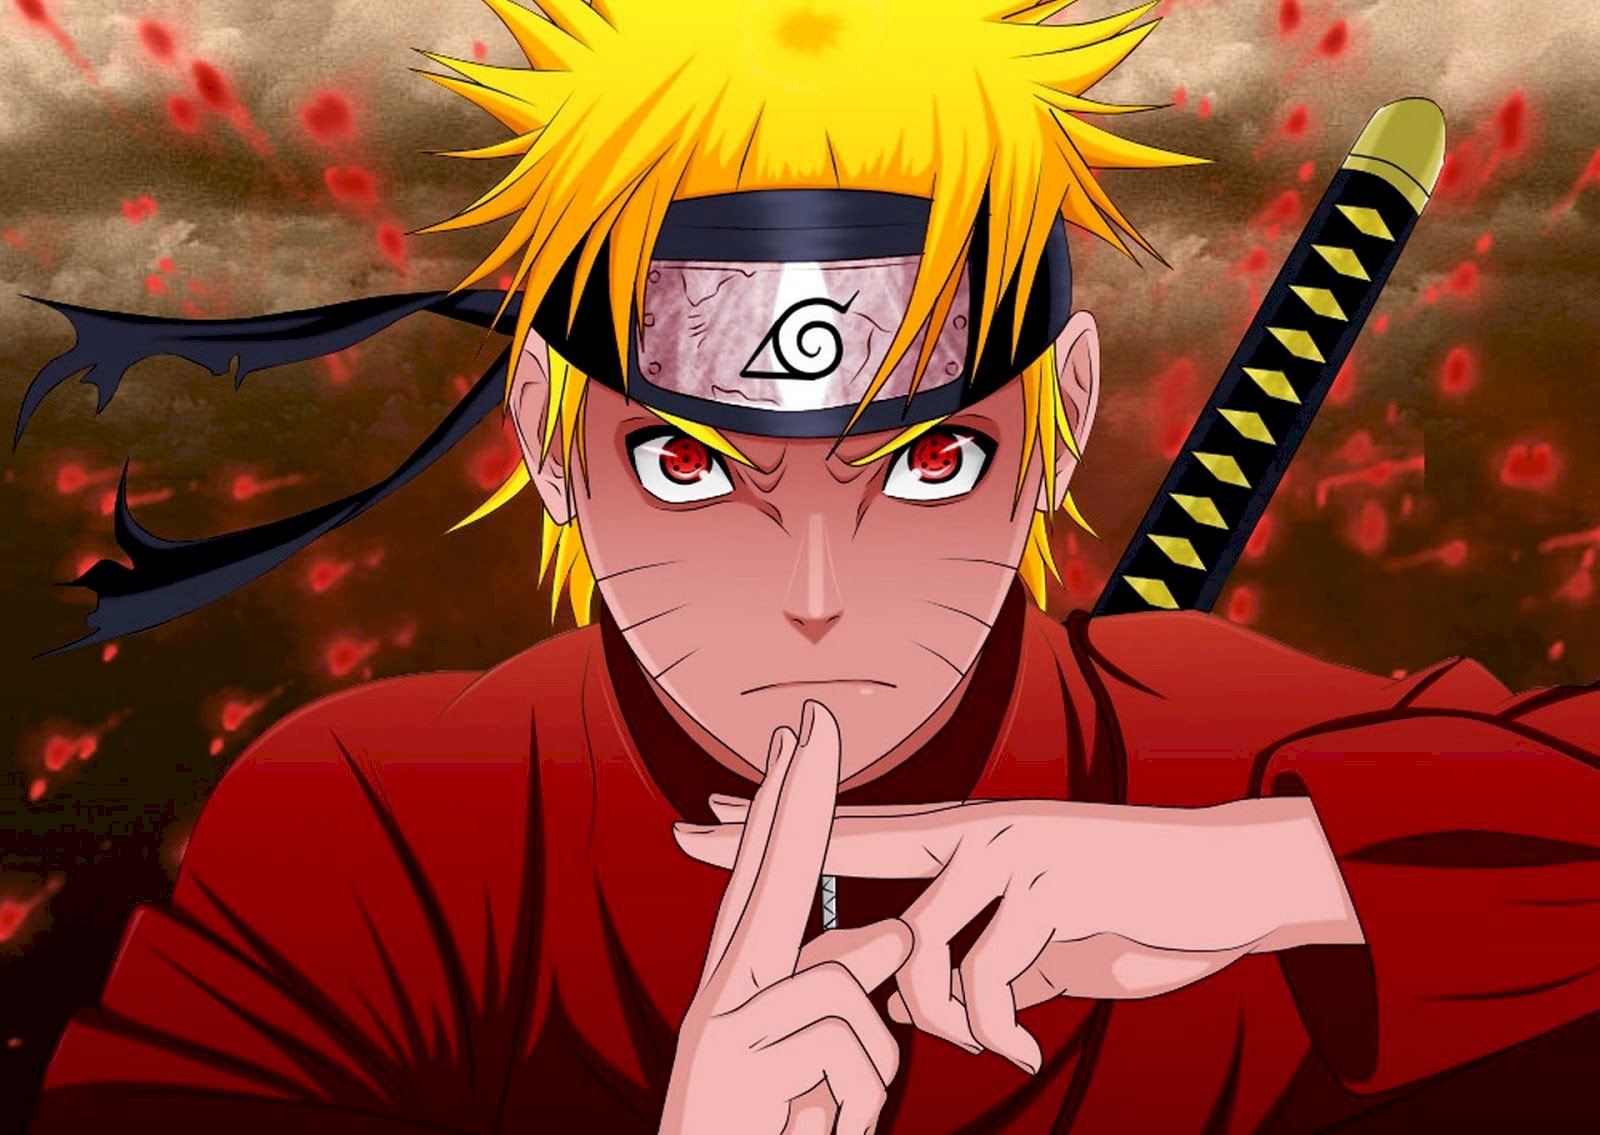 Những ai yêu thích nhẫn thuật trong Naruto chắc chắn không thể bỏ qua bộ sưu tập ảnh Naruto nhẫn thuật mạnh của chúng tôi. Với hàng trăm bức ảnh Naruto hiện đại và độc đáo, chúng tôi đảm bảo sẽ đưa bạn đến với một thế giới Naruto đầy sức mạnh và bất ngờ!